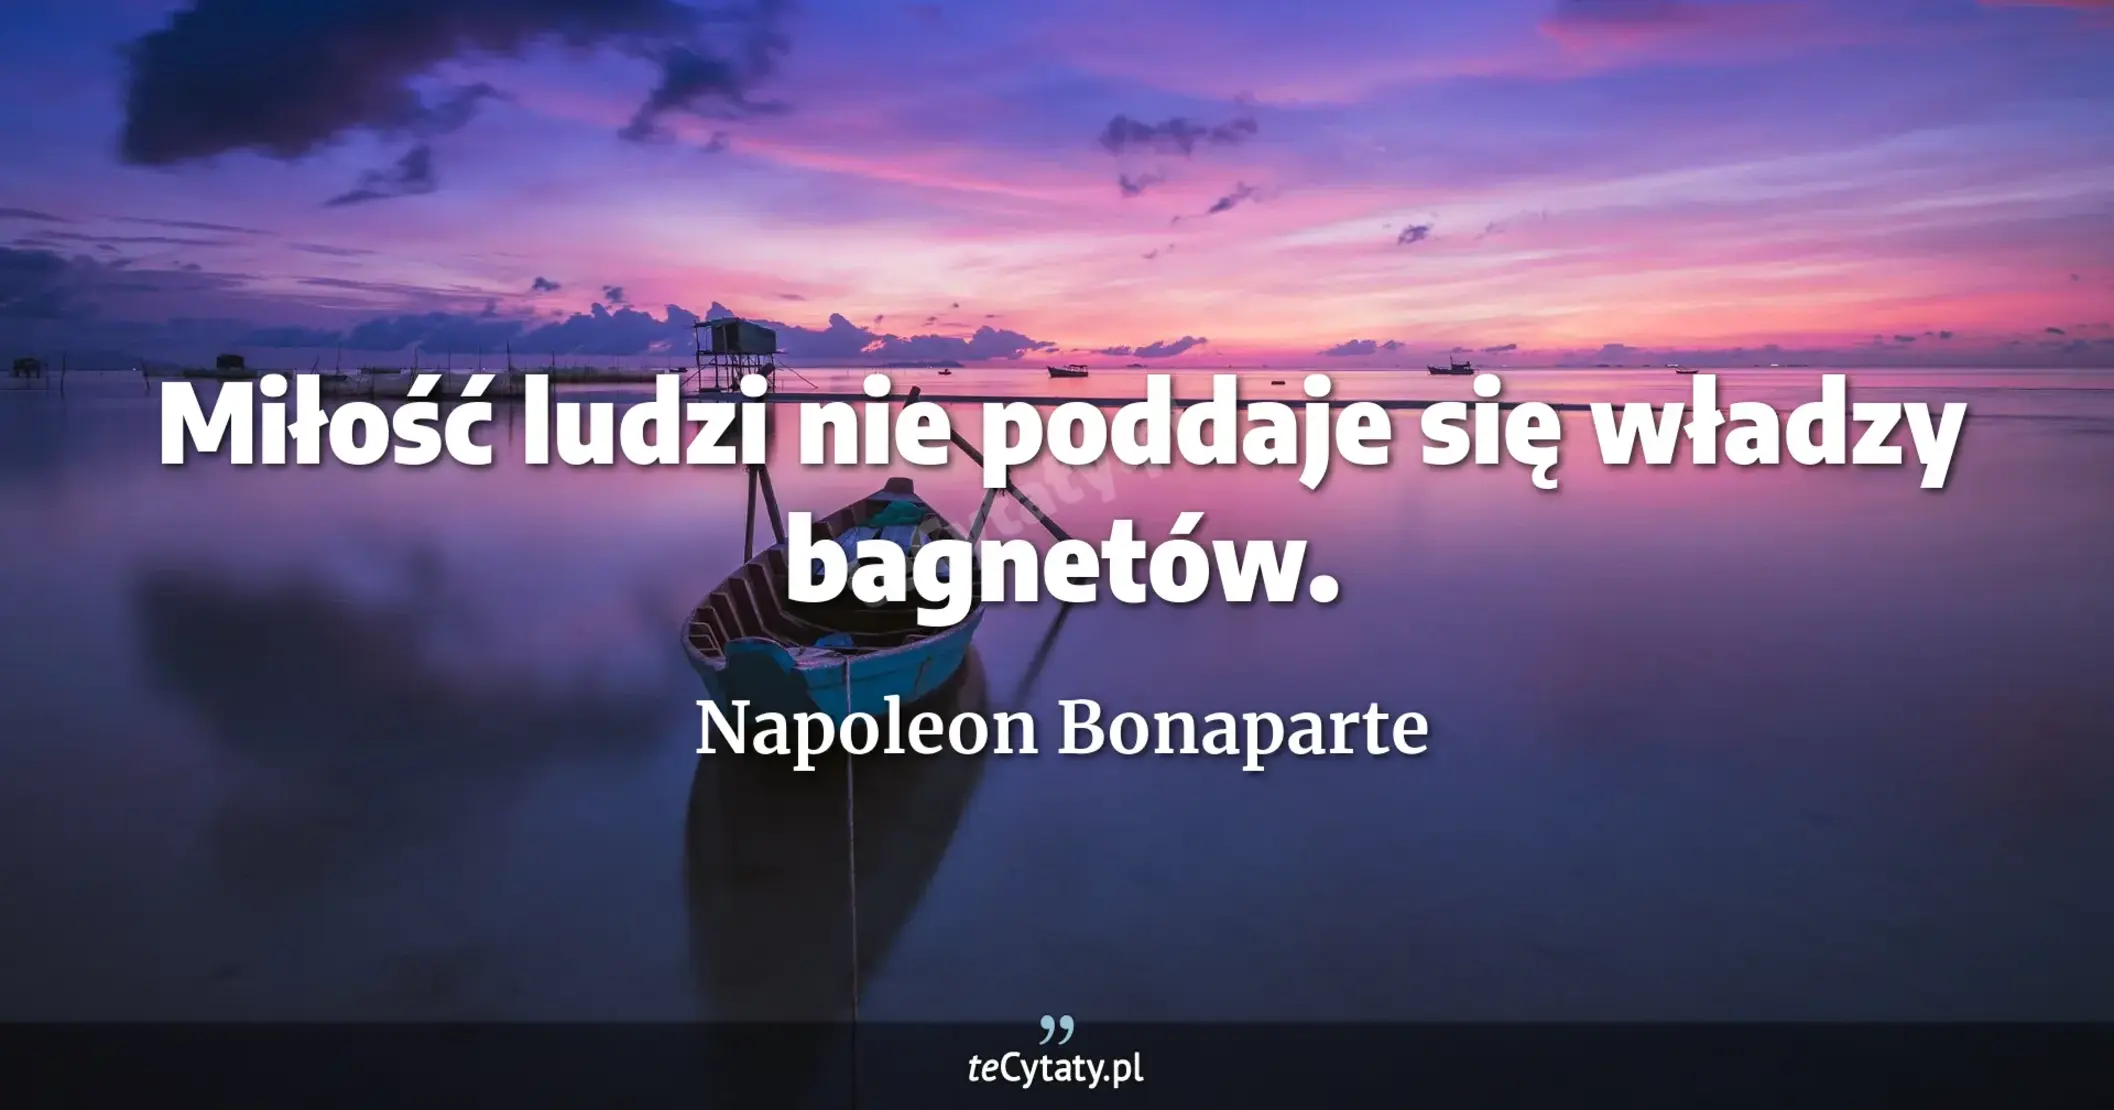 Miłość ludzi nie poddaje się władzy bagnetów. - Napoleon Bonaparte